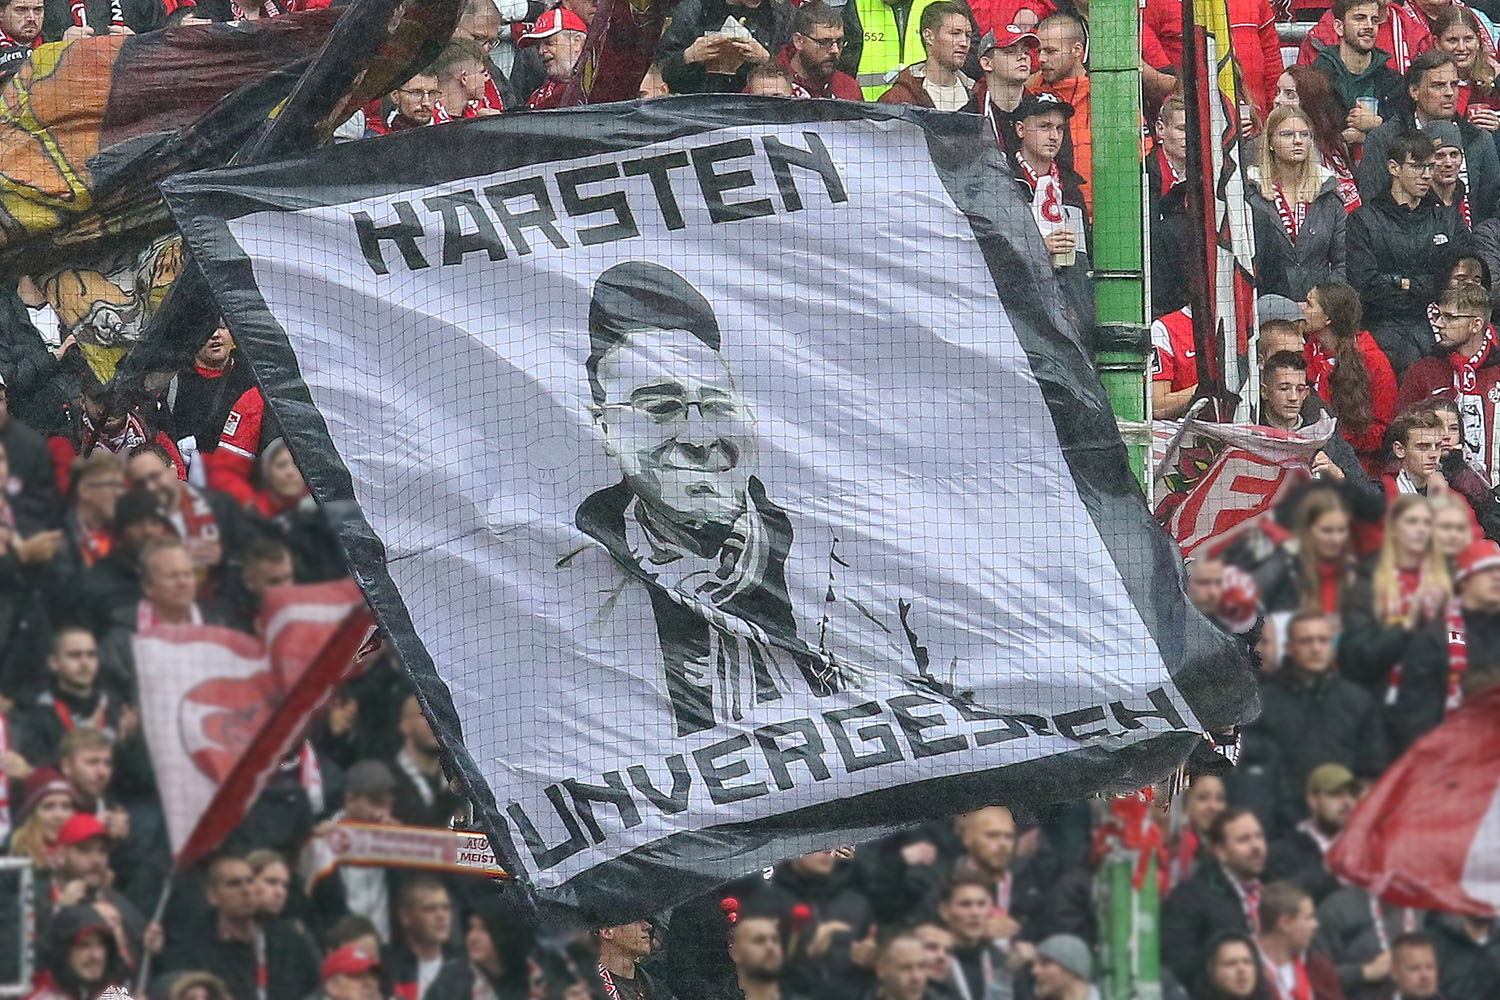 Schwenkfahne in Erinnerung an den vor sechs Jahren vestorbenen FCK-Fan Karsten